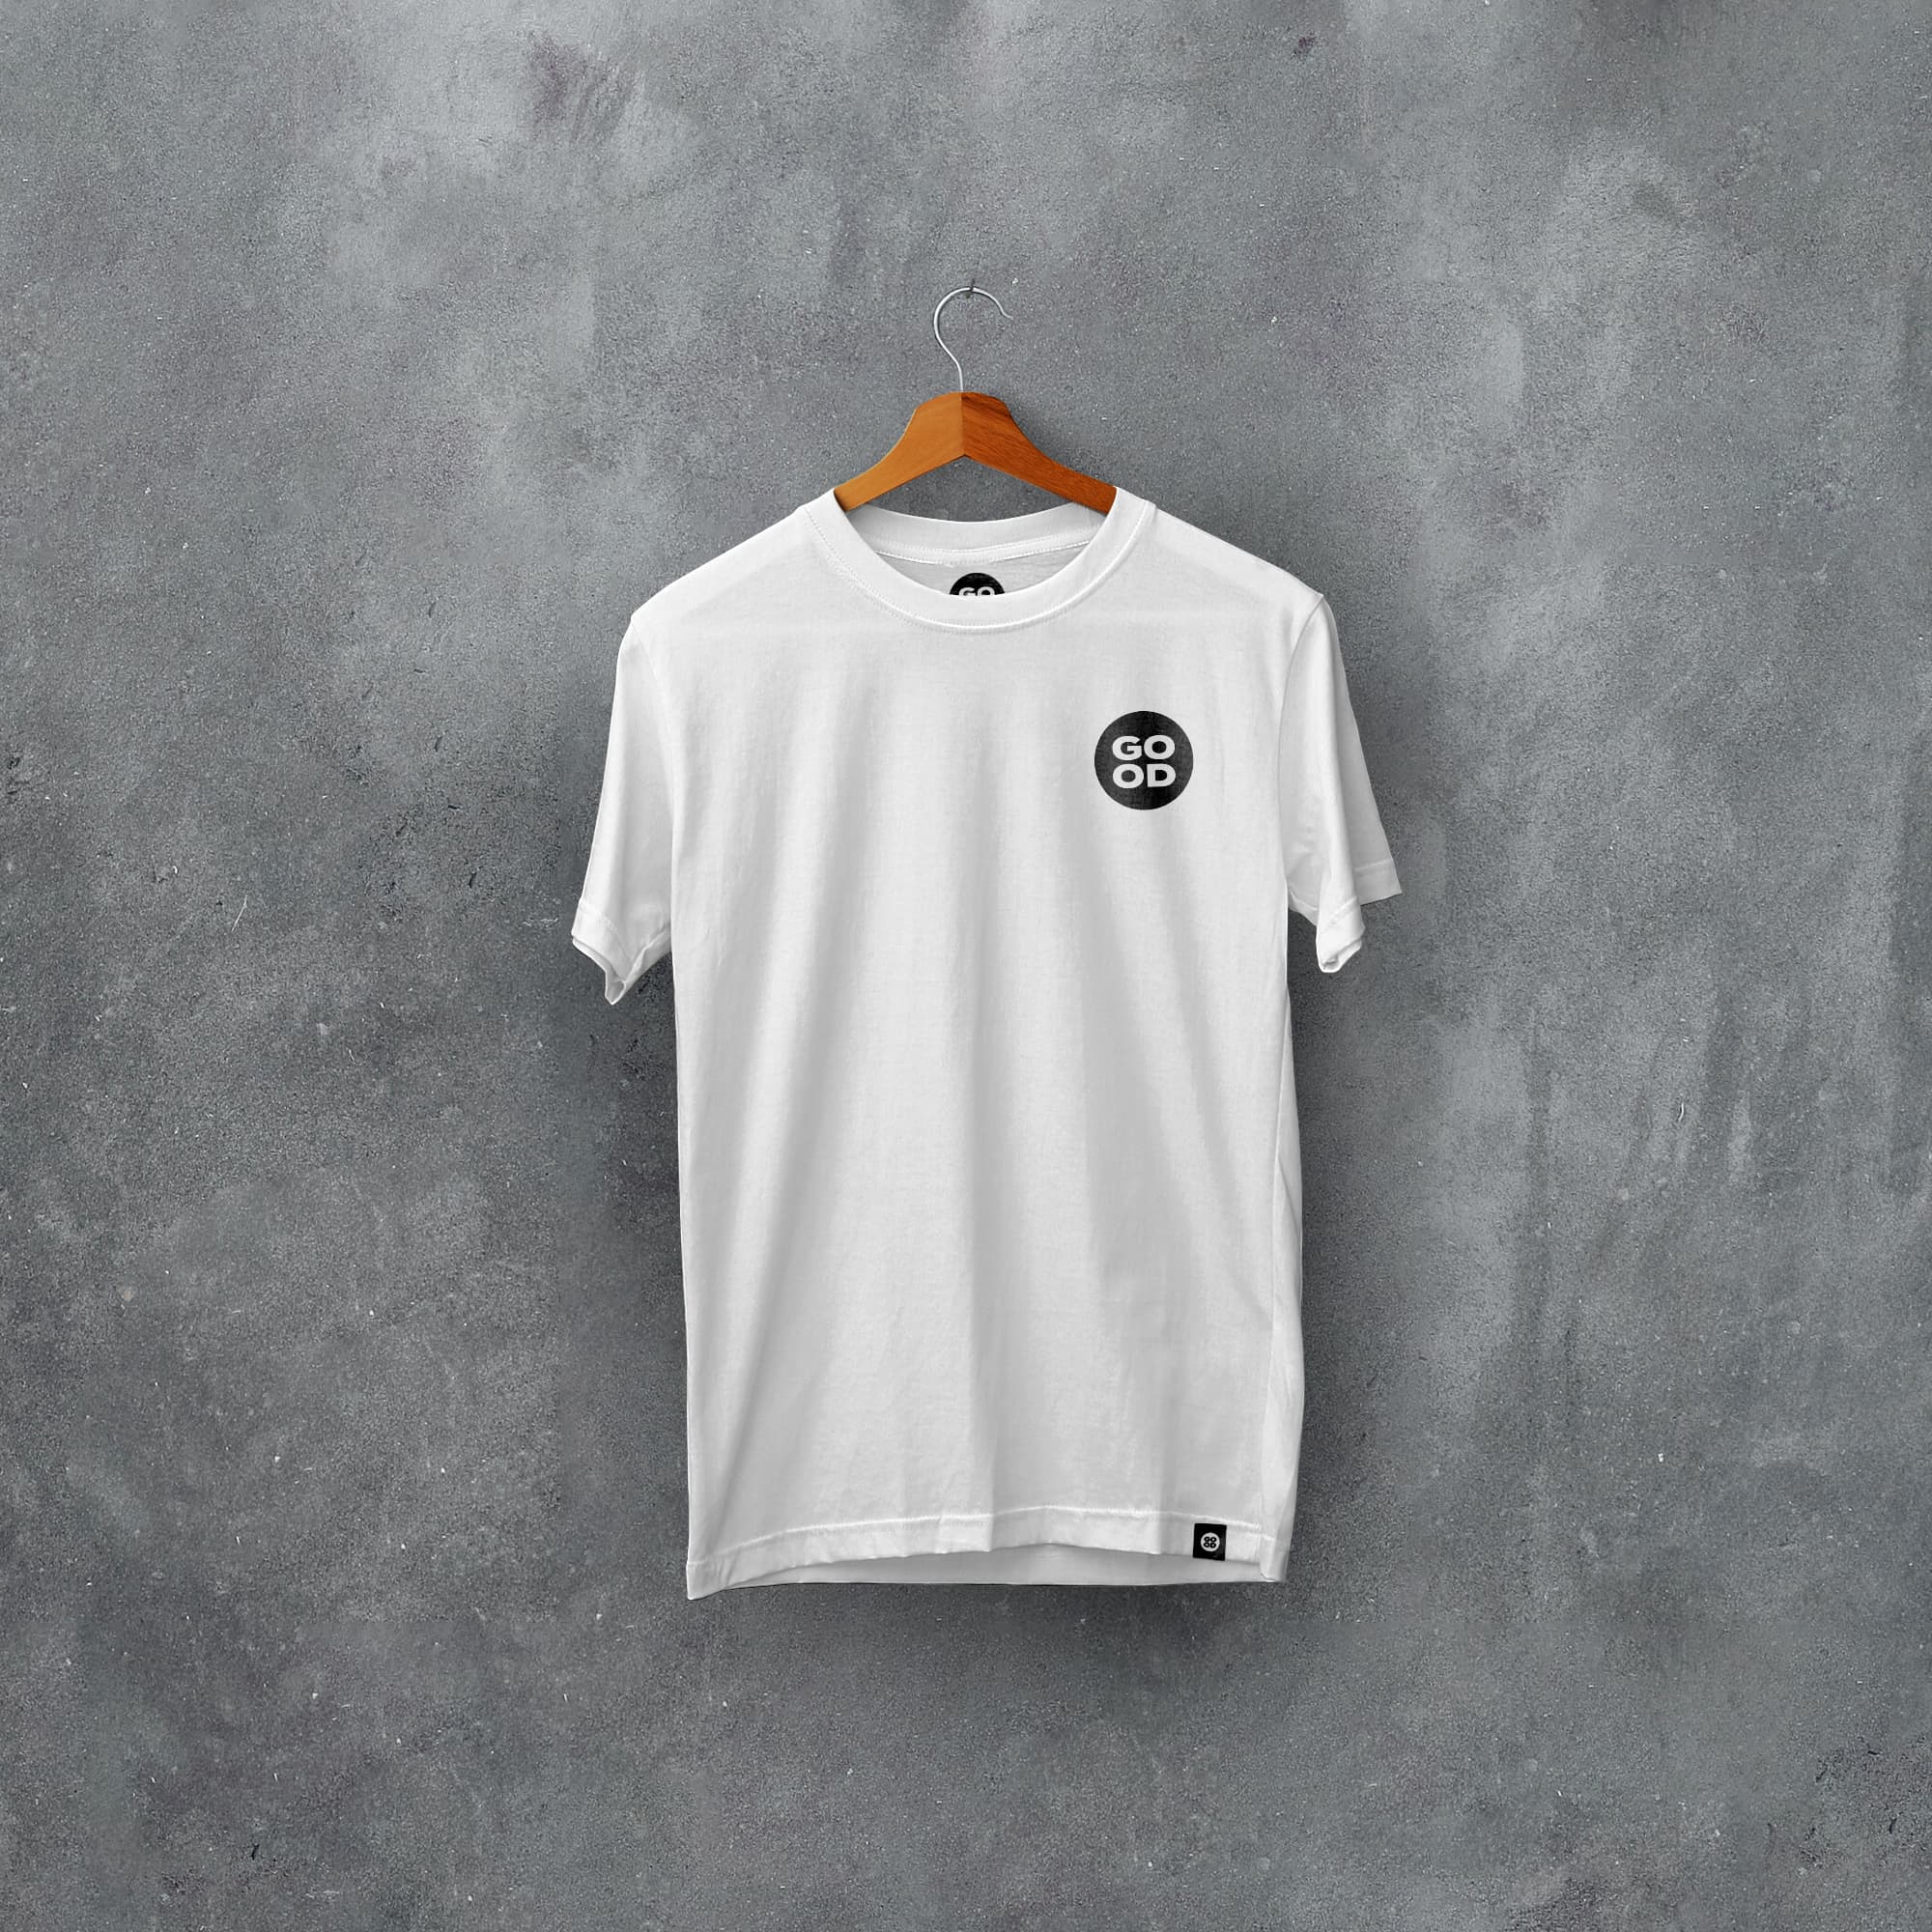 Mansfield Classic Kits Football T-Shirt